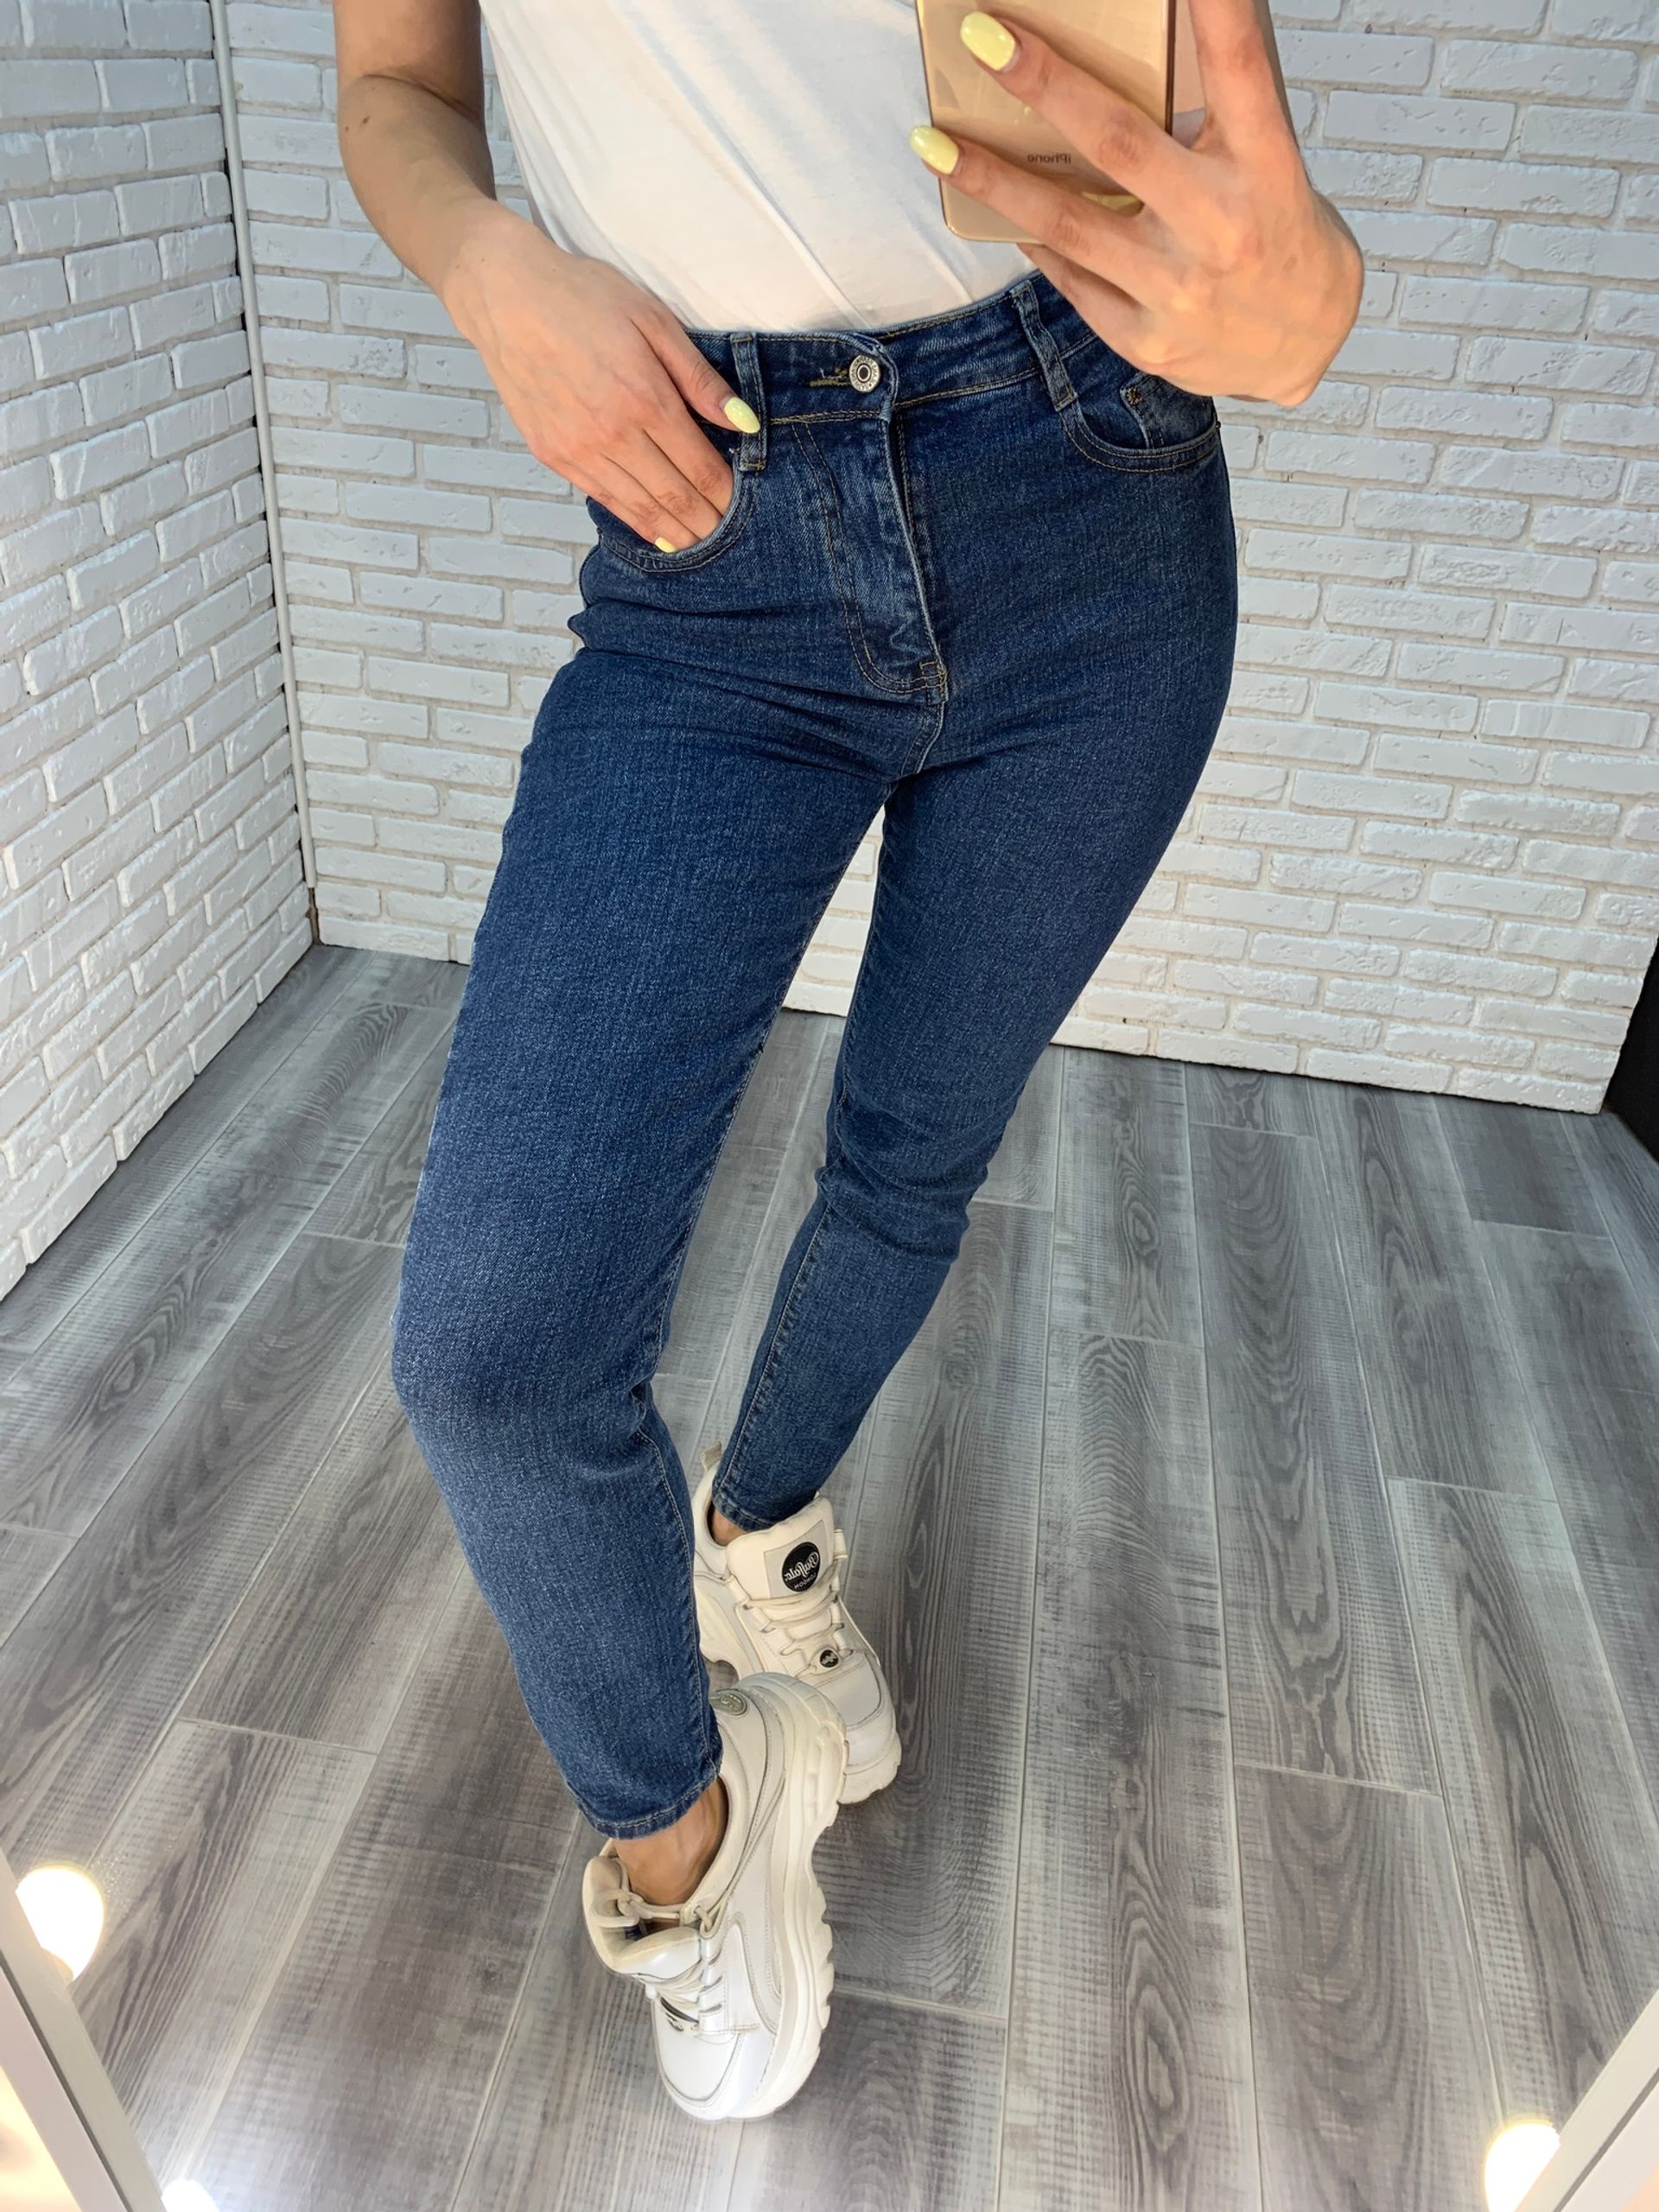 Женские стрейчевые джинсы